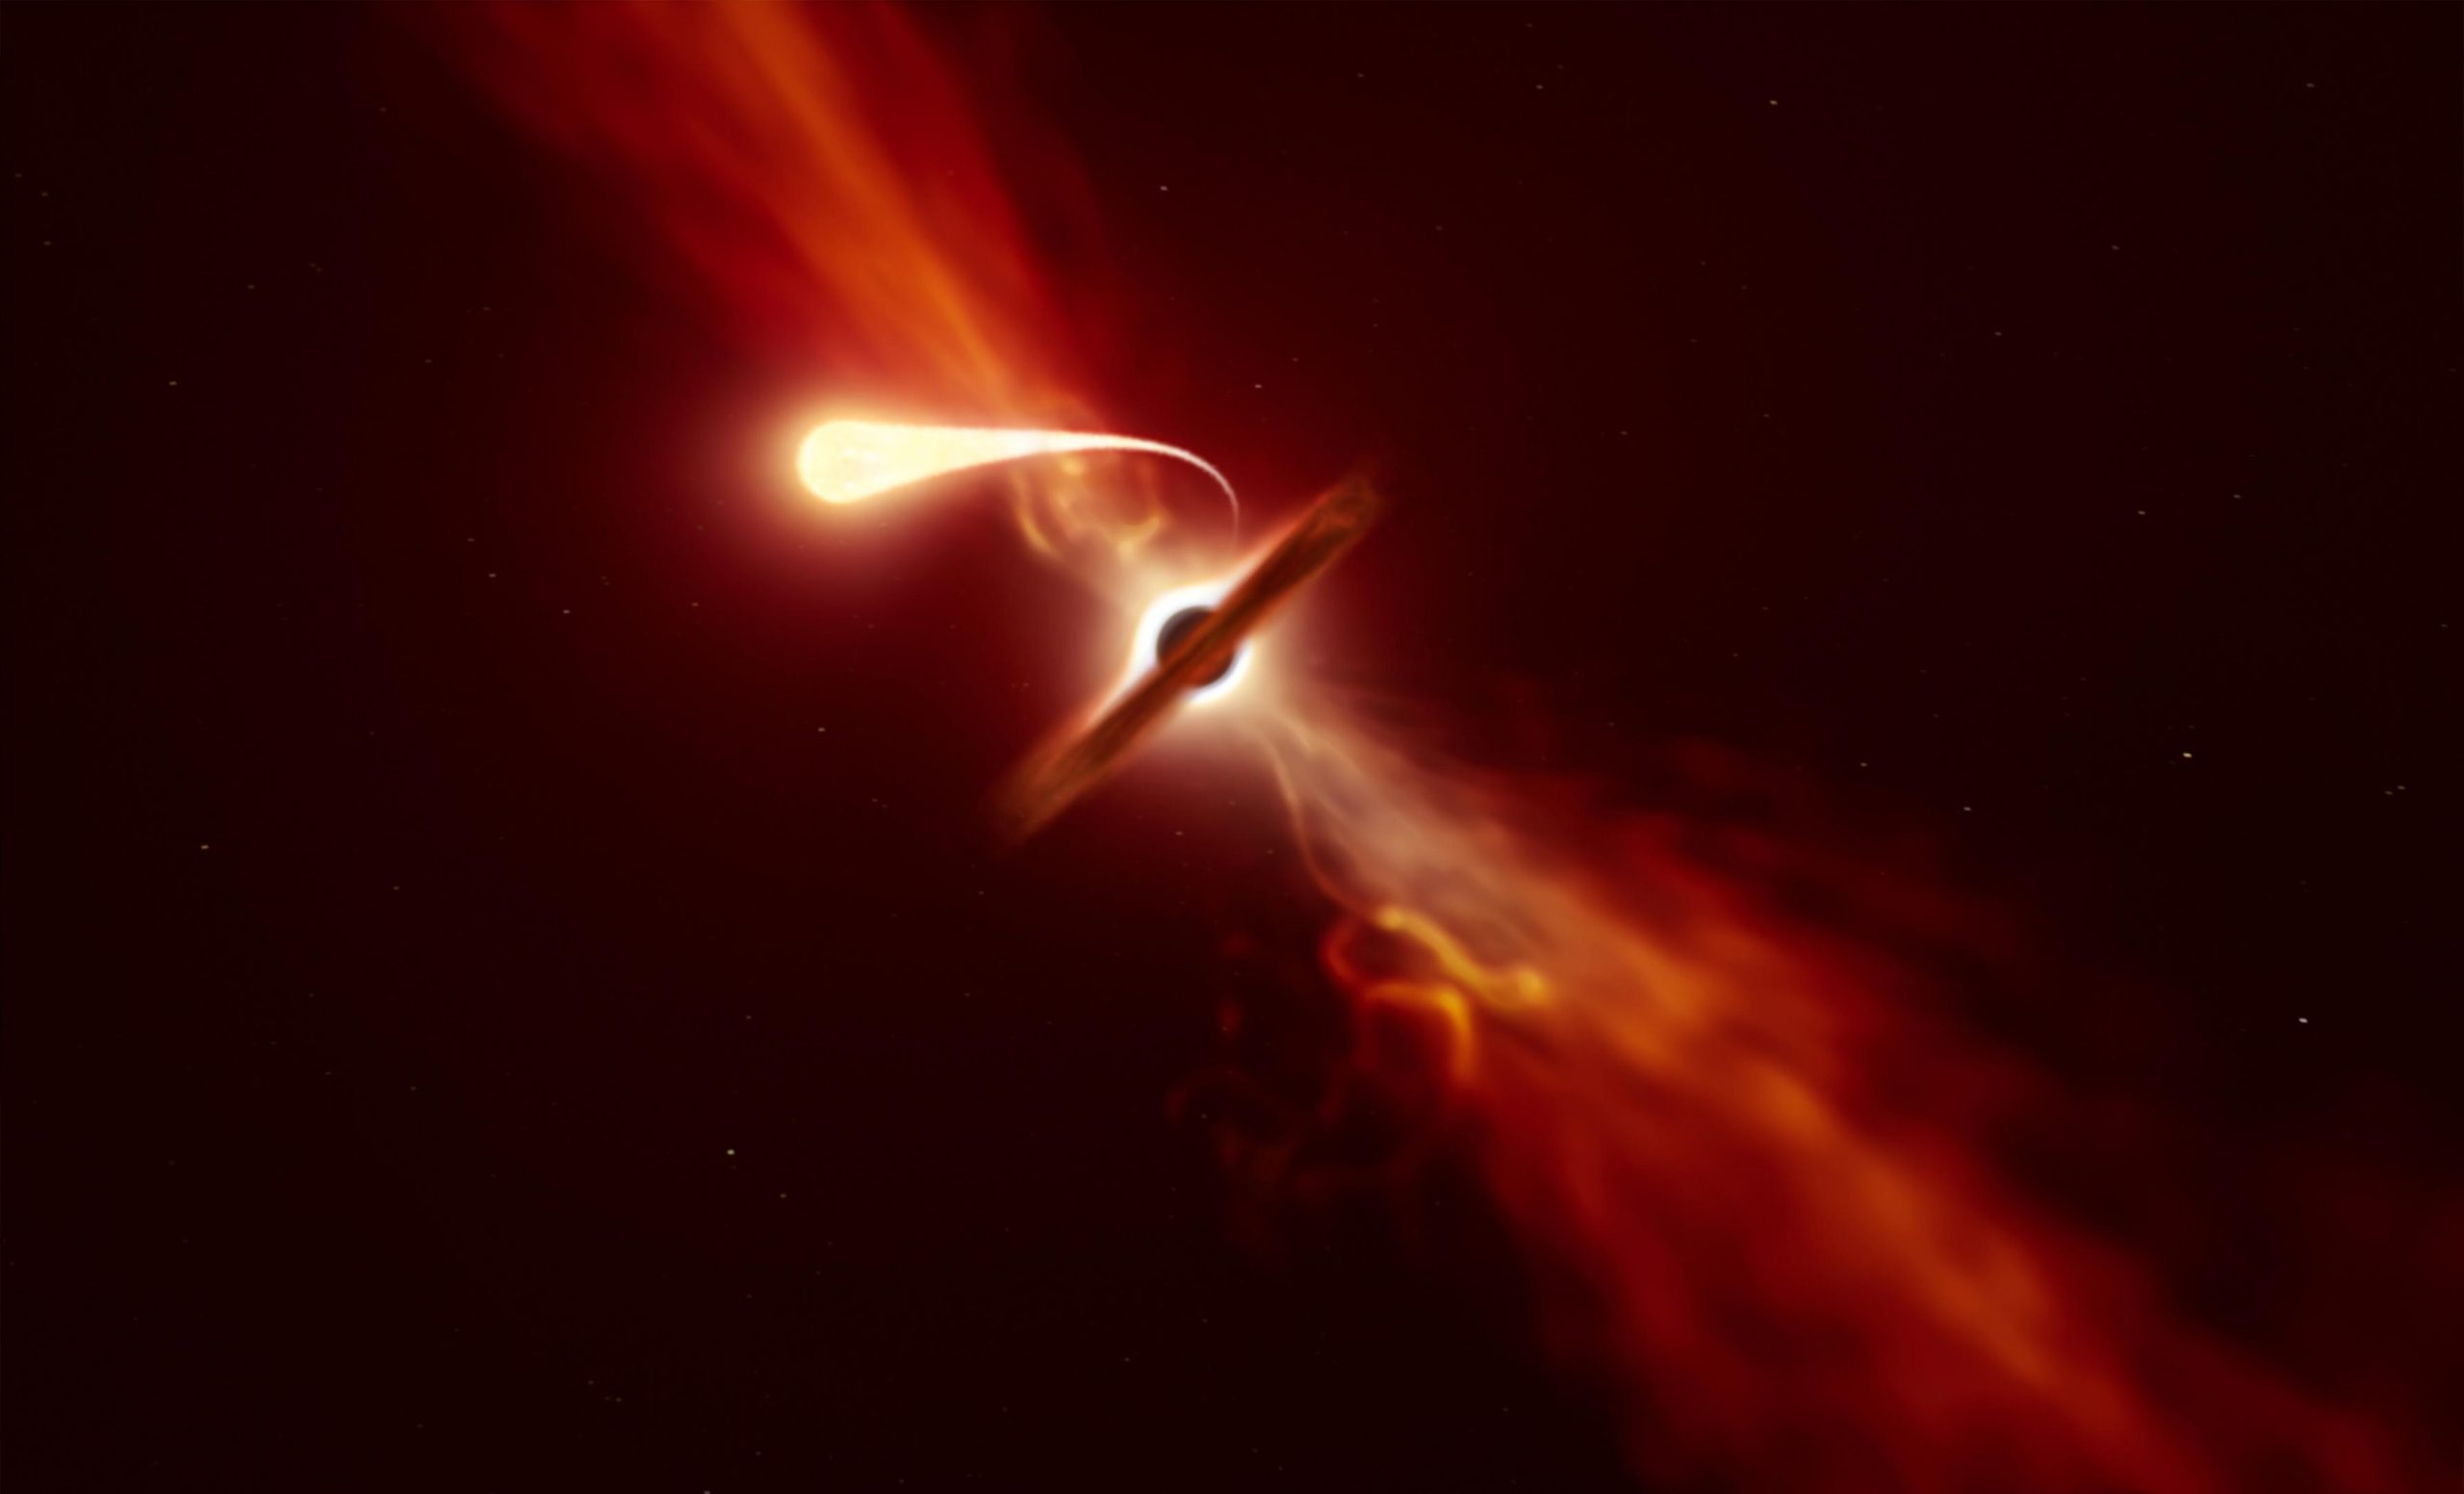 Süper kütleli kara delik, dev yıldızı “korkunç” enerjiyle parçalıyor